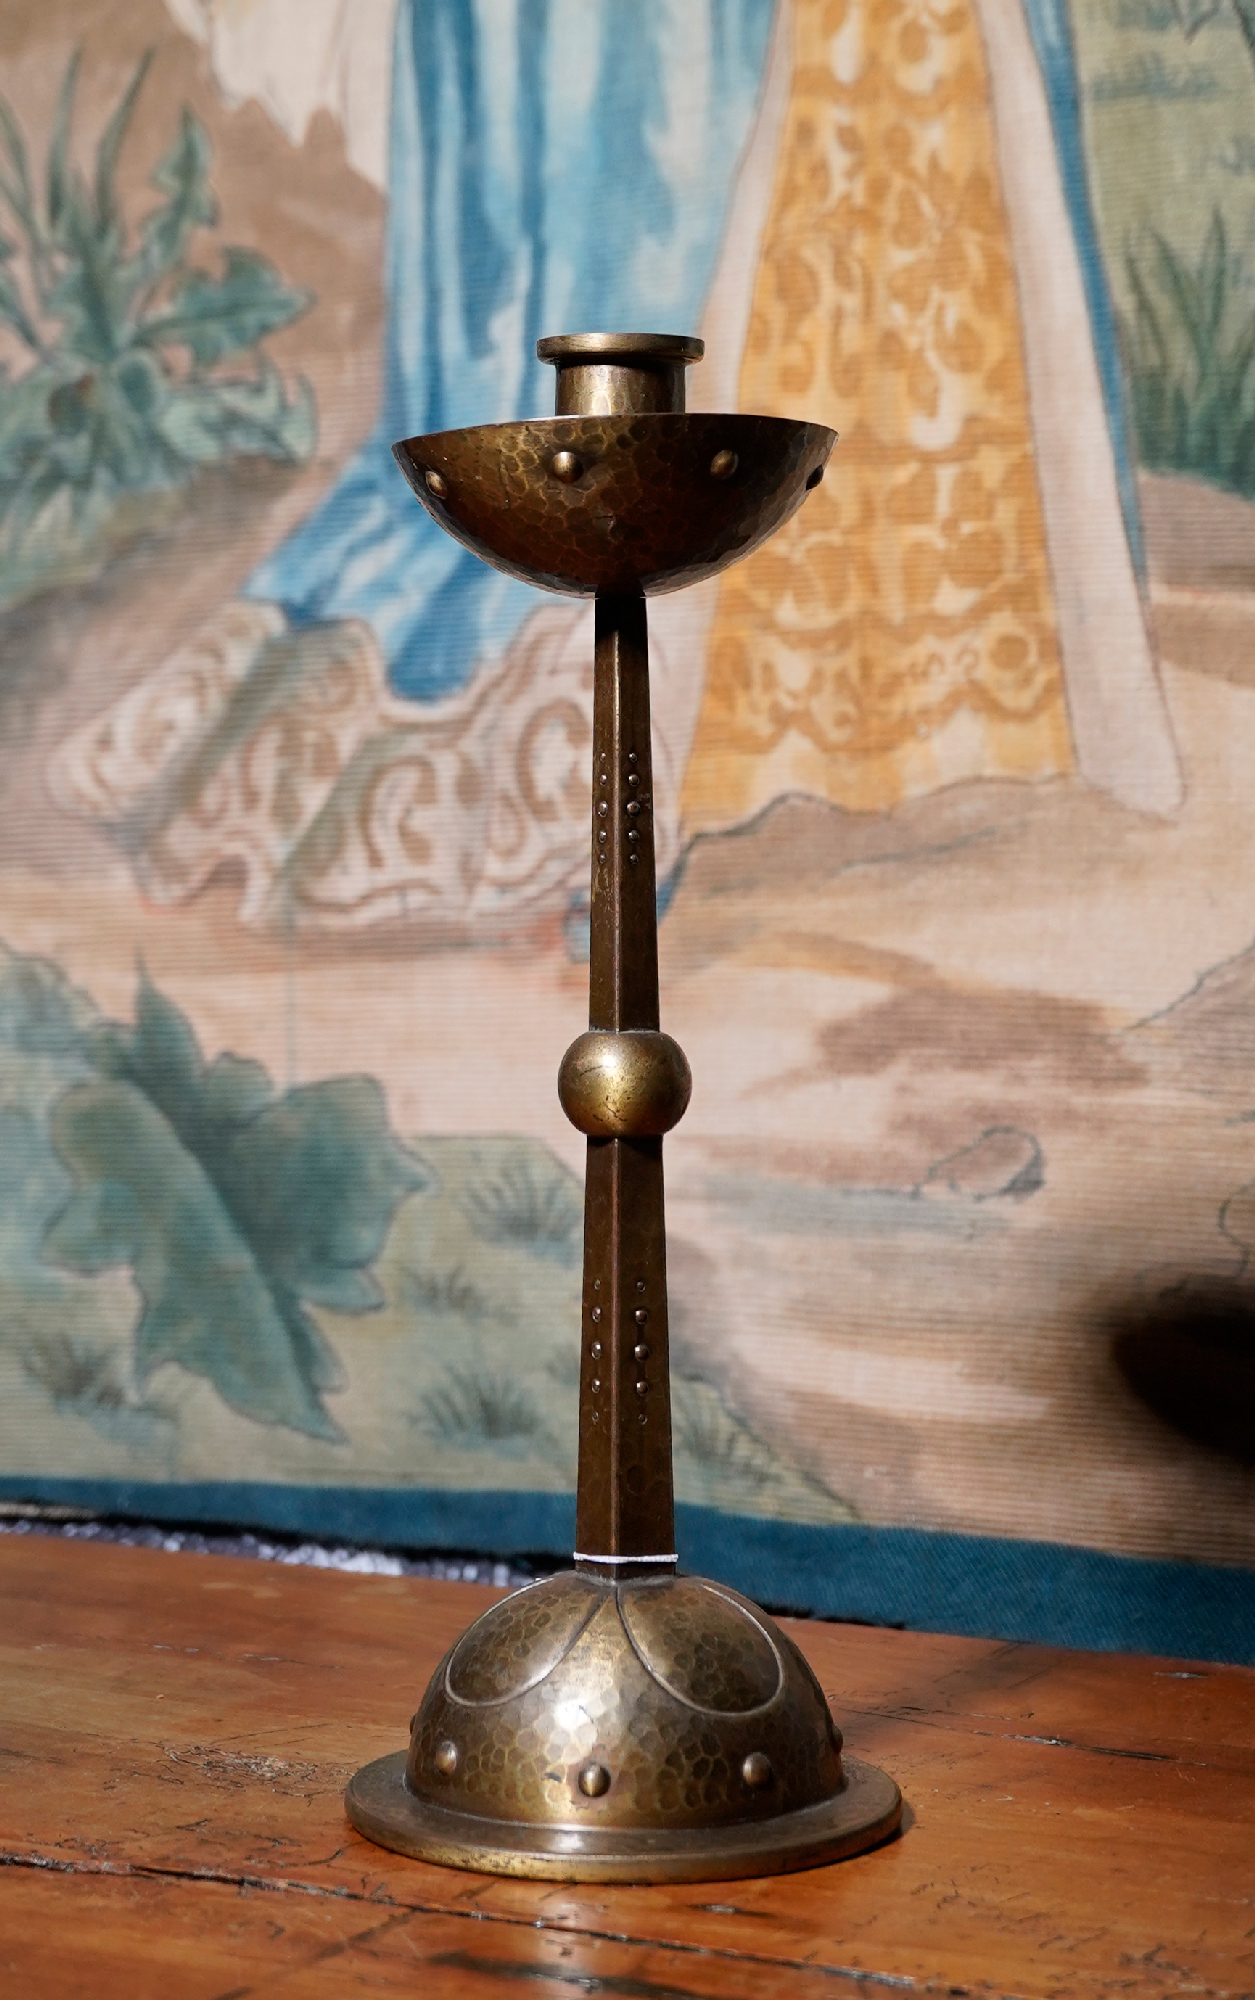 WMF Jugendstil candlestick, circa 1900 